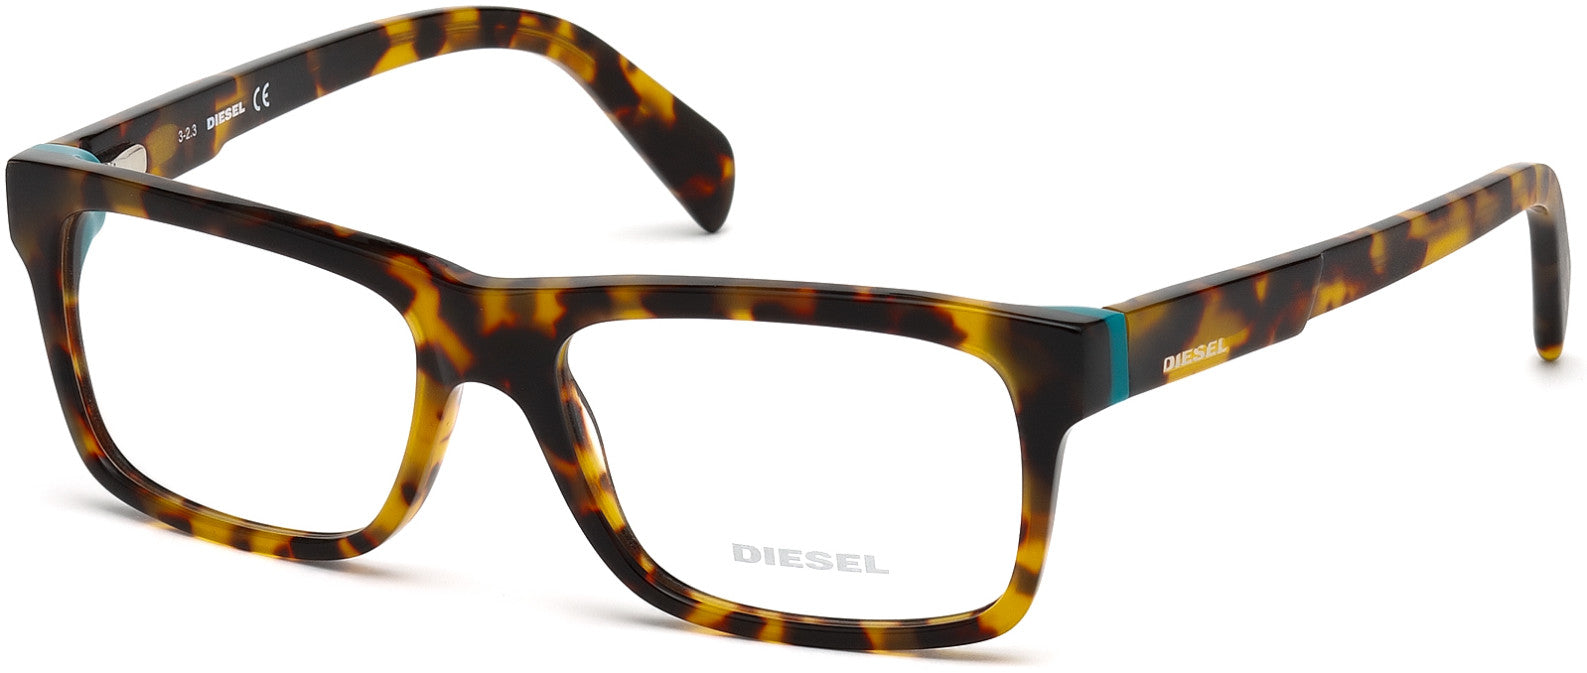 Diesel DL5071 Geometric Eyeglasses 052-052 - Dark Havana